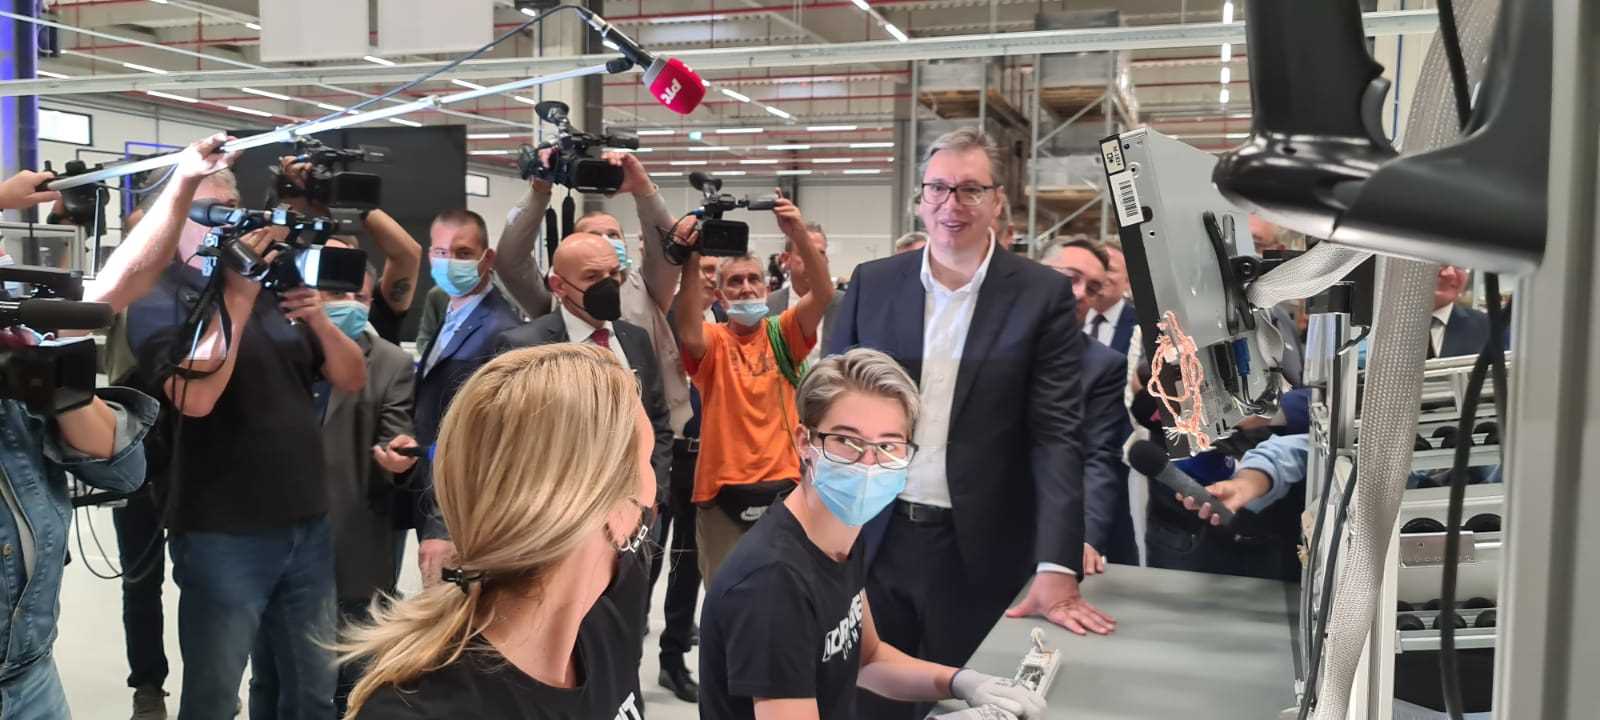 Novi pogon svajcarske kompanije "Regent lajtning" u Svilajncu, koja ce zaposliti vise od 120 radnika, presecanjem vrpce zvanicno je otvorio predsednik Srbije Aleksandar Vucic.